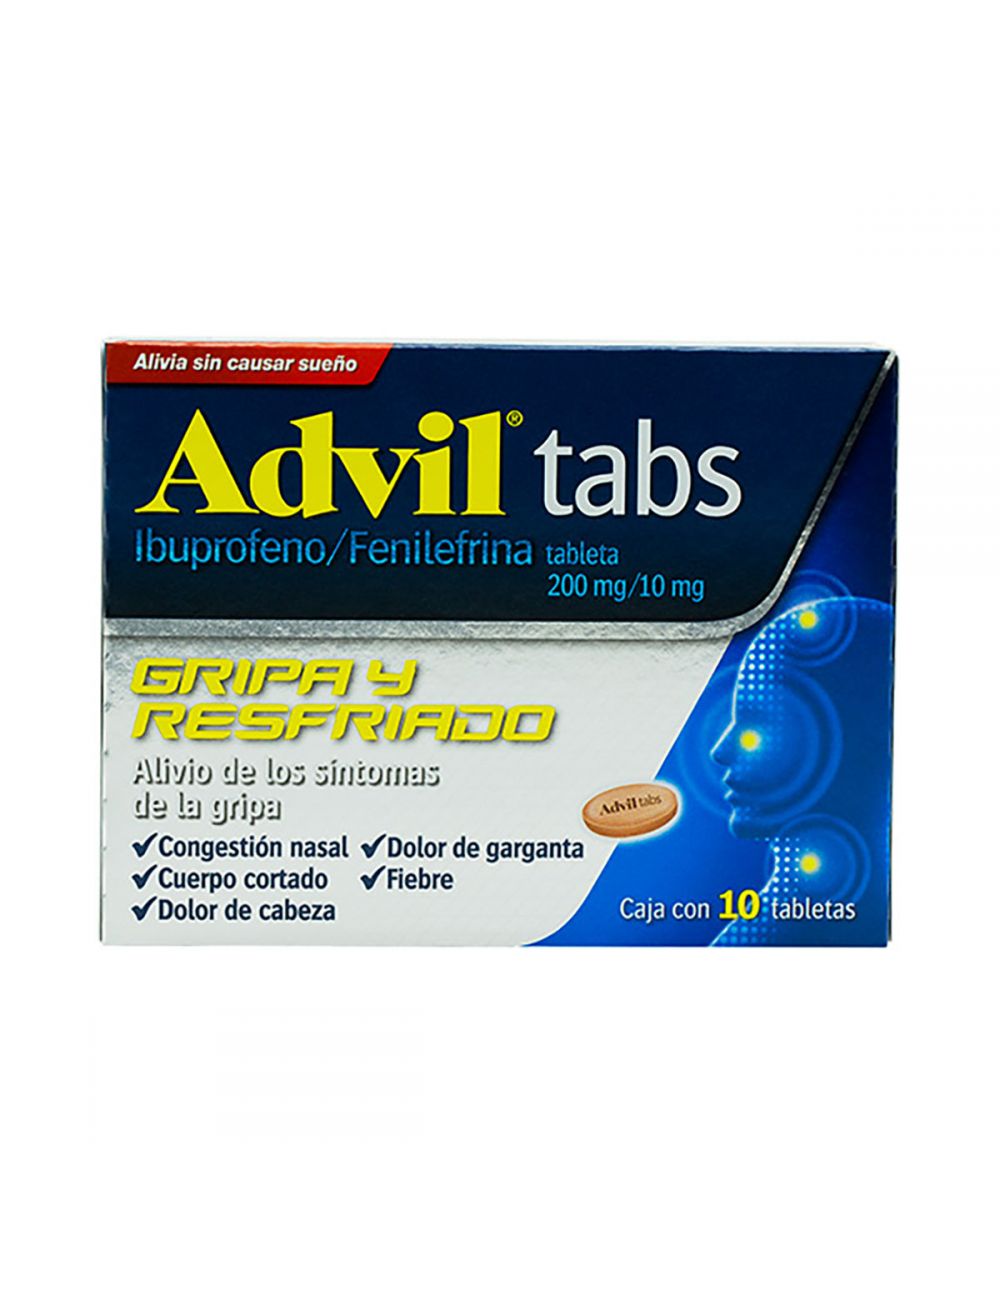 Precio Advil Tabs Caja Con 10 Tabletas| Farmalisto MX